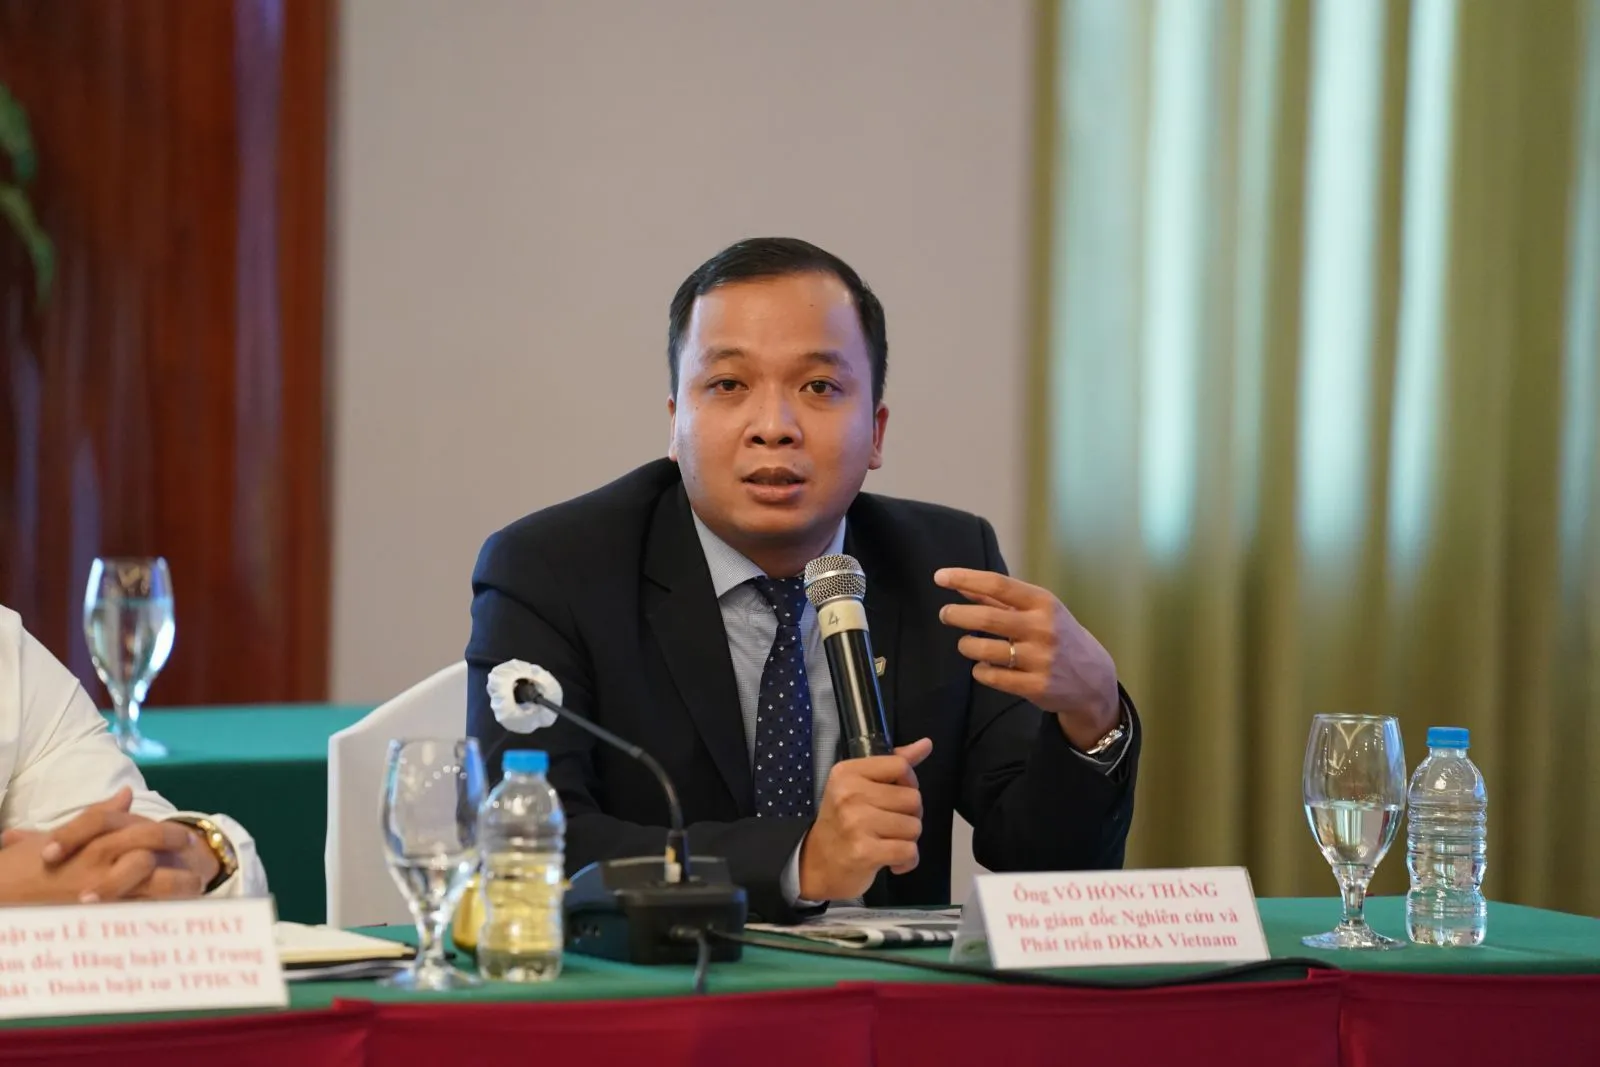 



Ông Võ Hồng Thắng, Phó Giám đốc bộ phận R&amp;D DKRA Group

